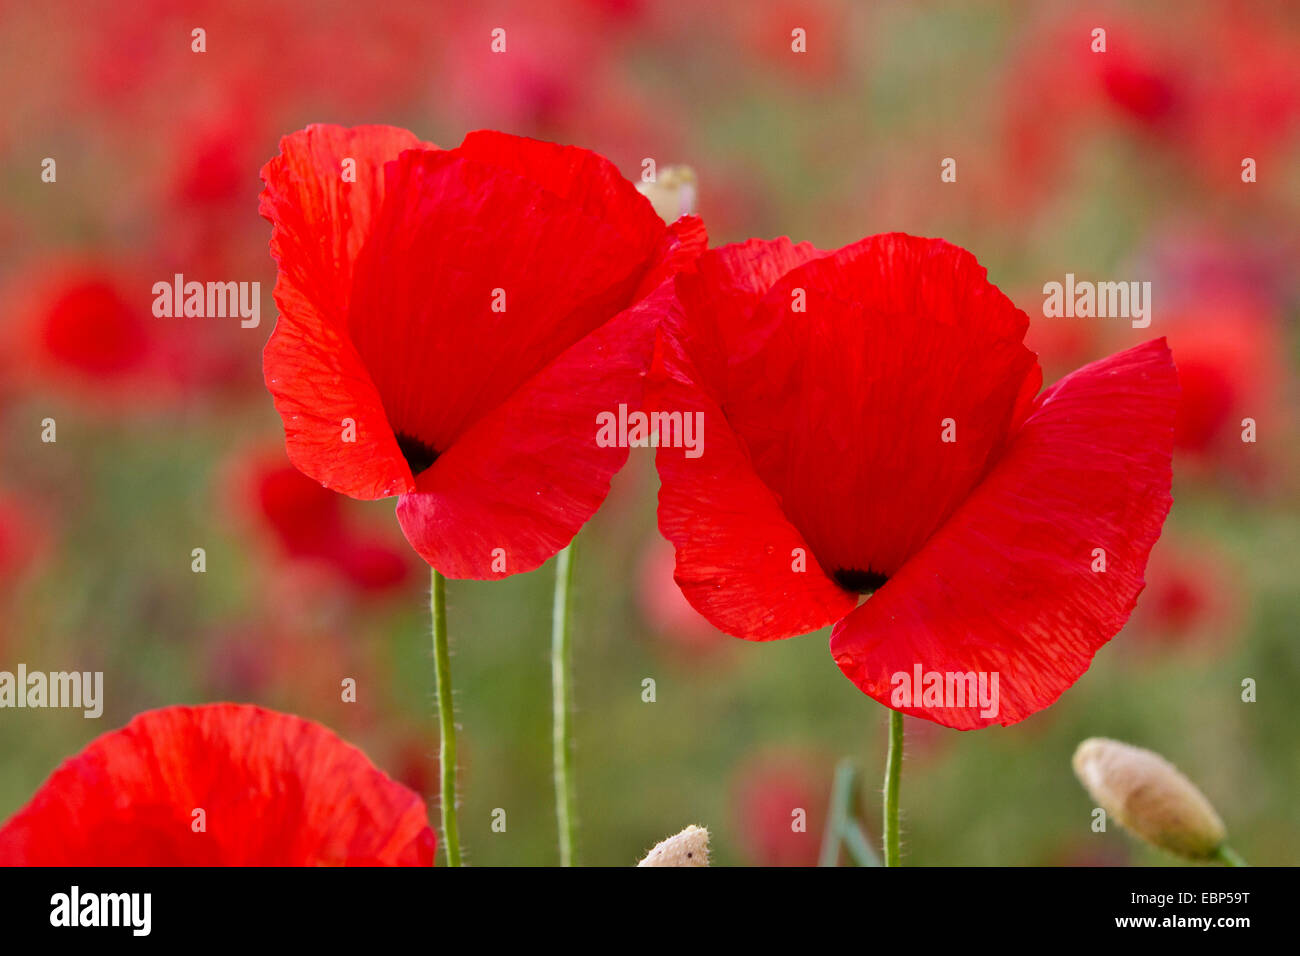 Common poppy, Corn poppy, Red poppy (Papaver rhoeas), poppy flowers, Germany, Bavaria Stock Photo